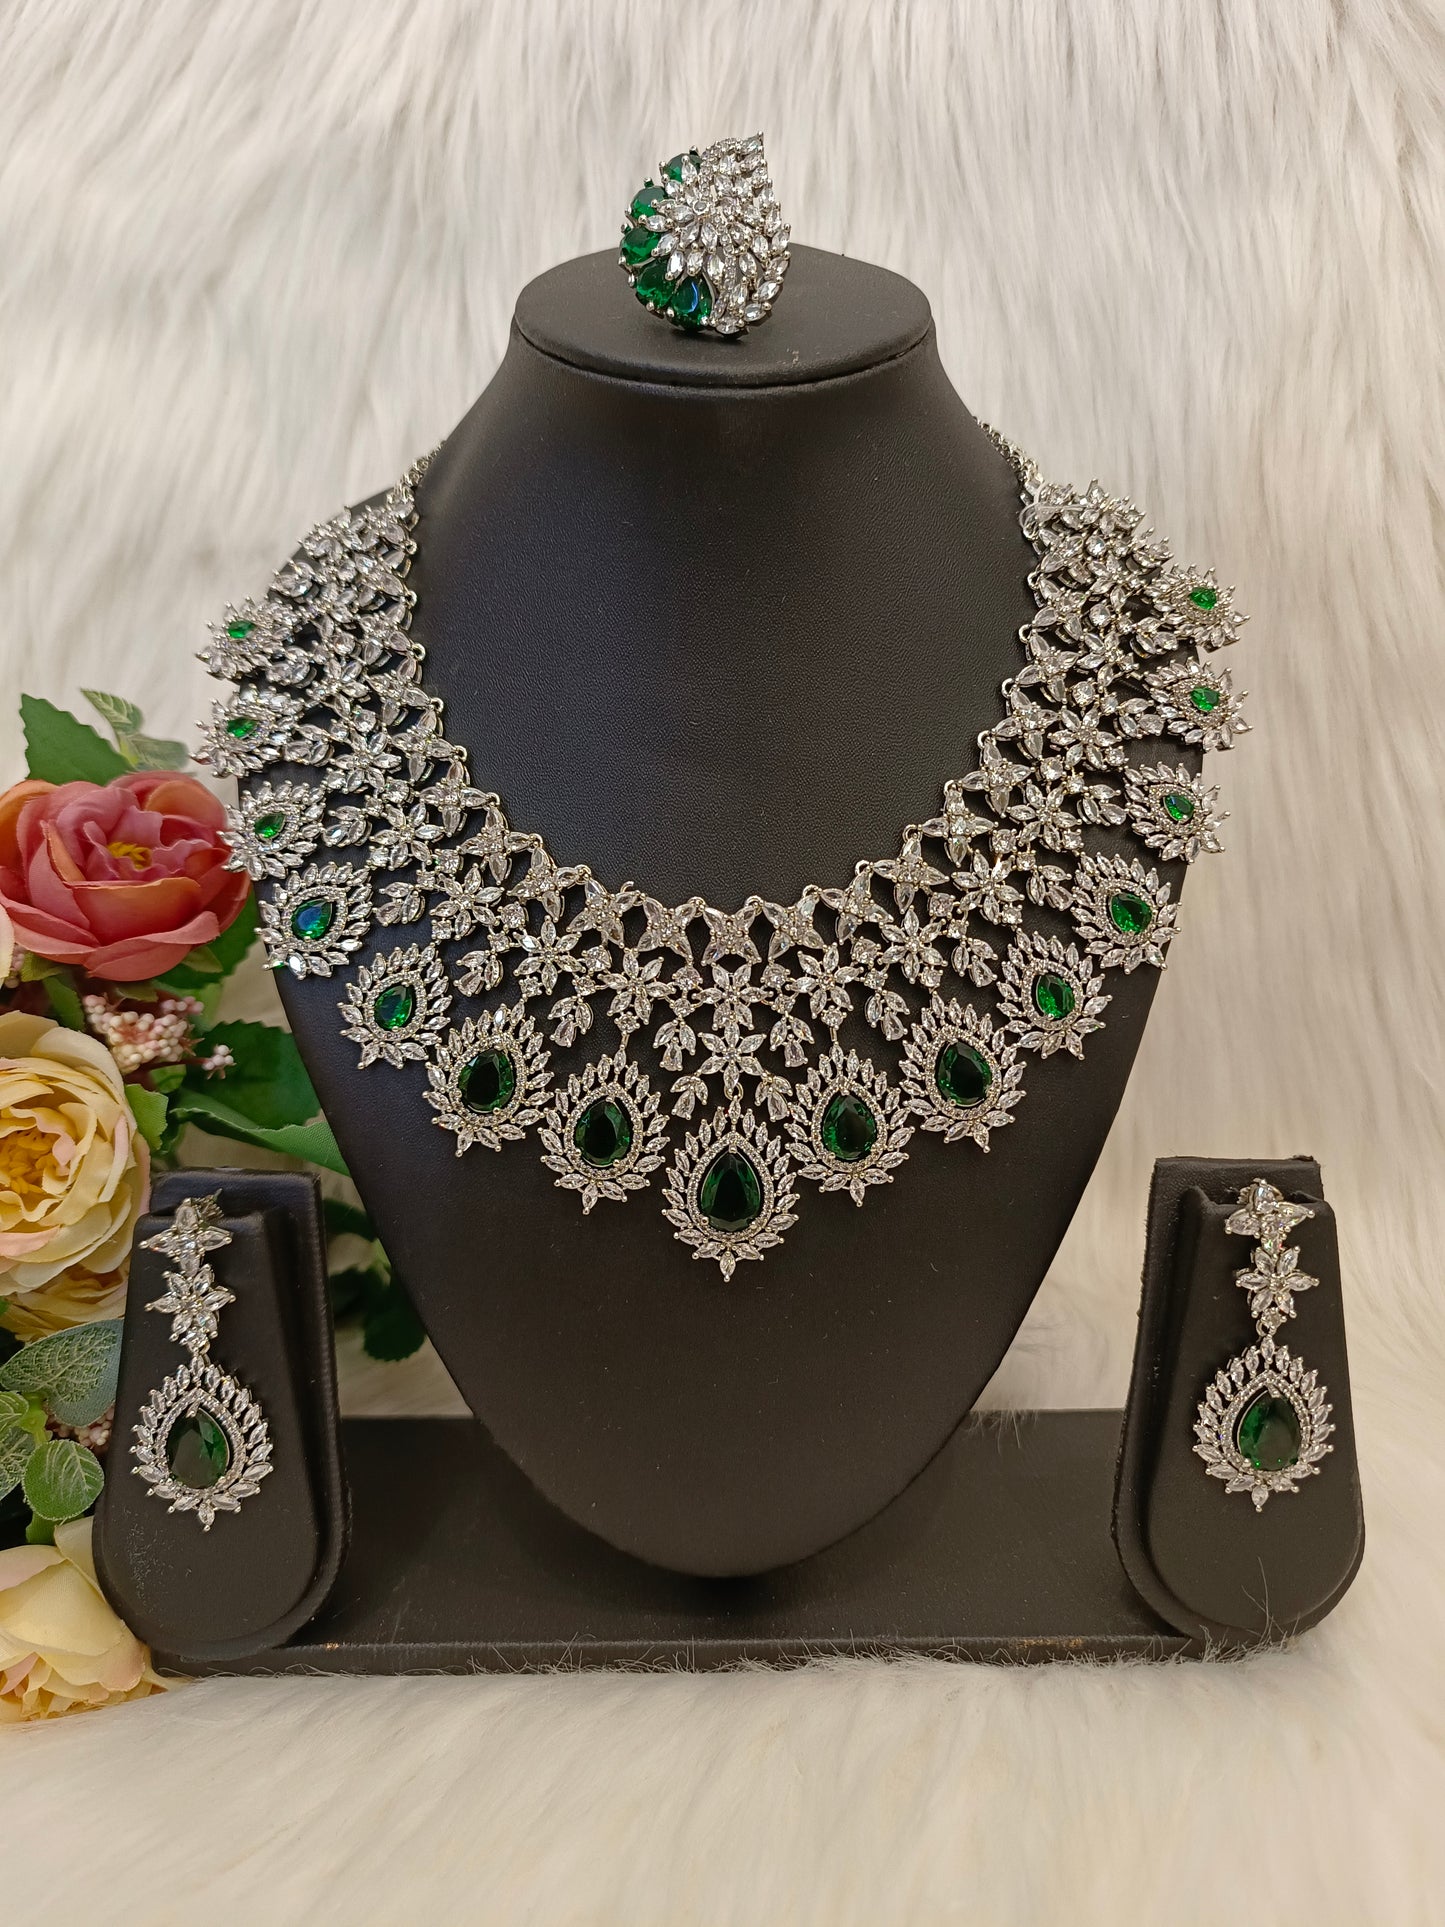 Emerald Bridal Set